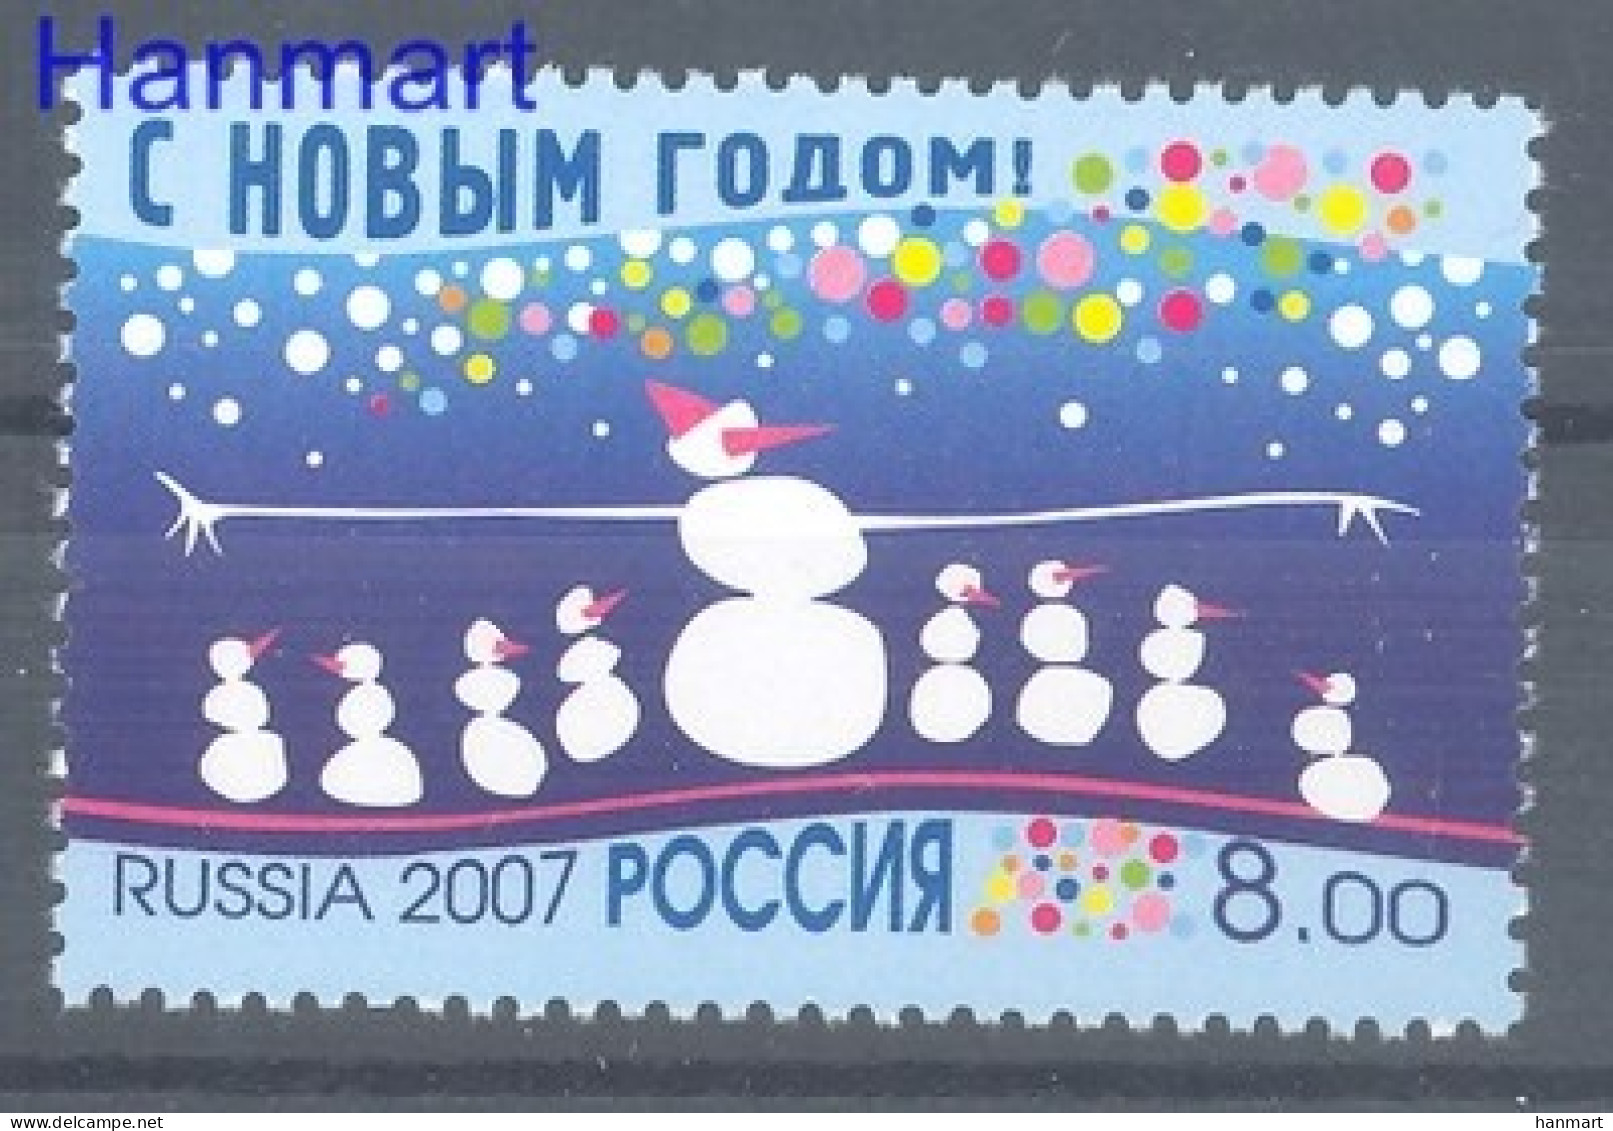 Russia 2007 Mi 1445 MNH  (ZE4 RSS1445) - New Year